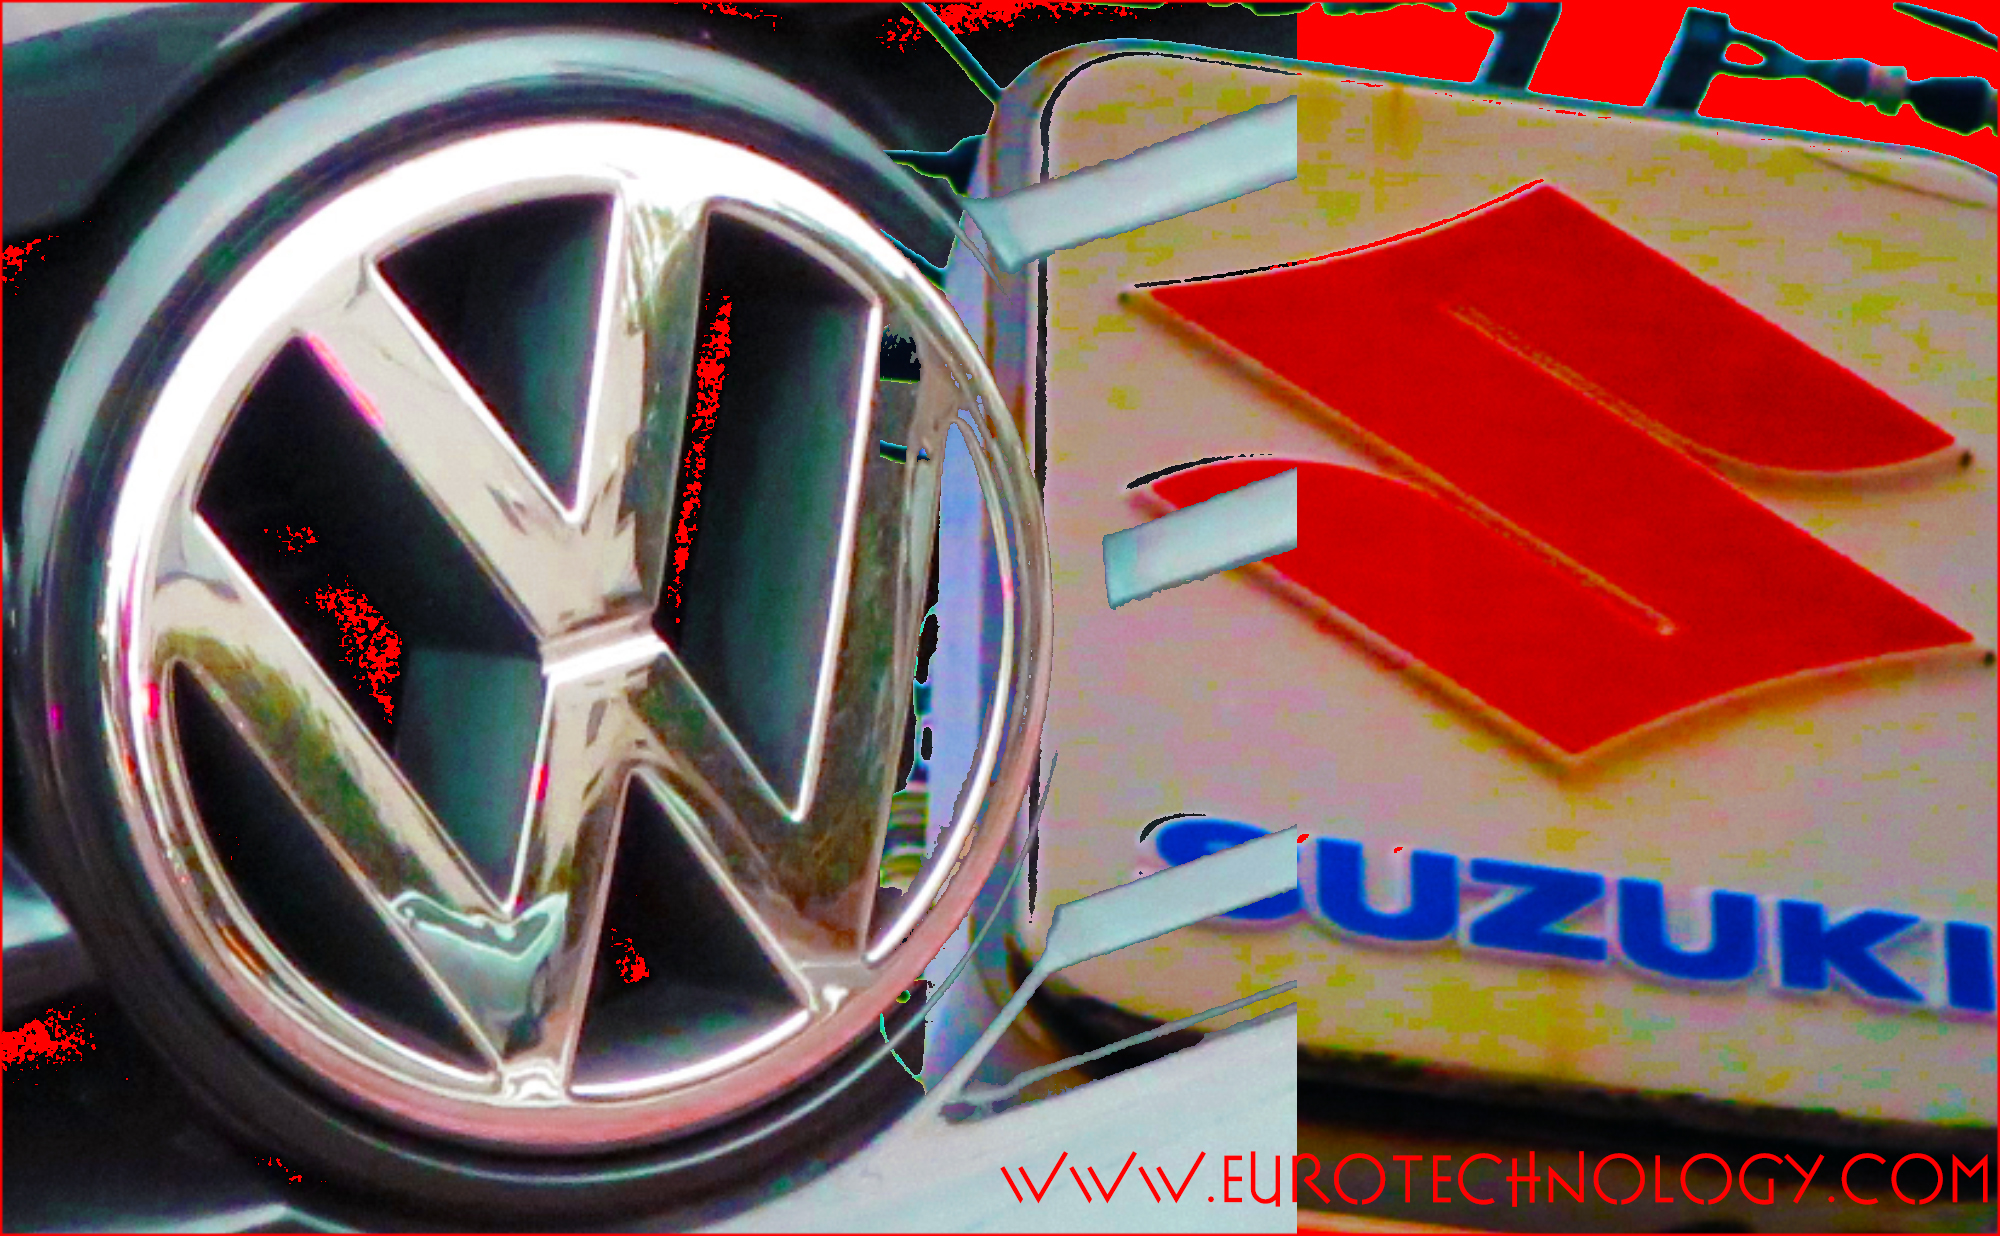 Suzuki Volkswagen “Wagen-san” divorce: a teachable moment